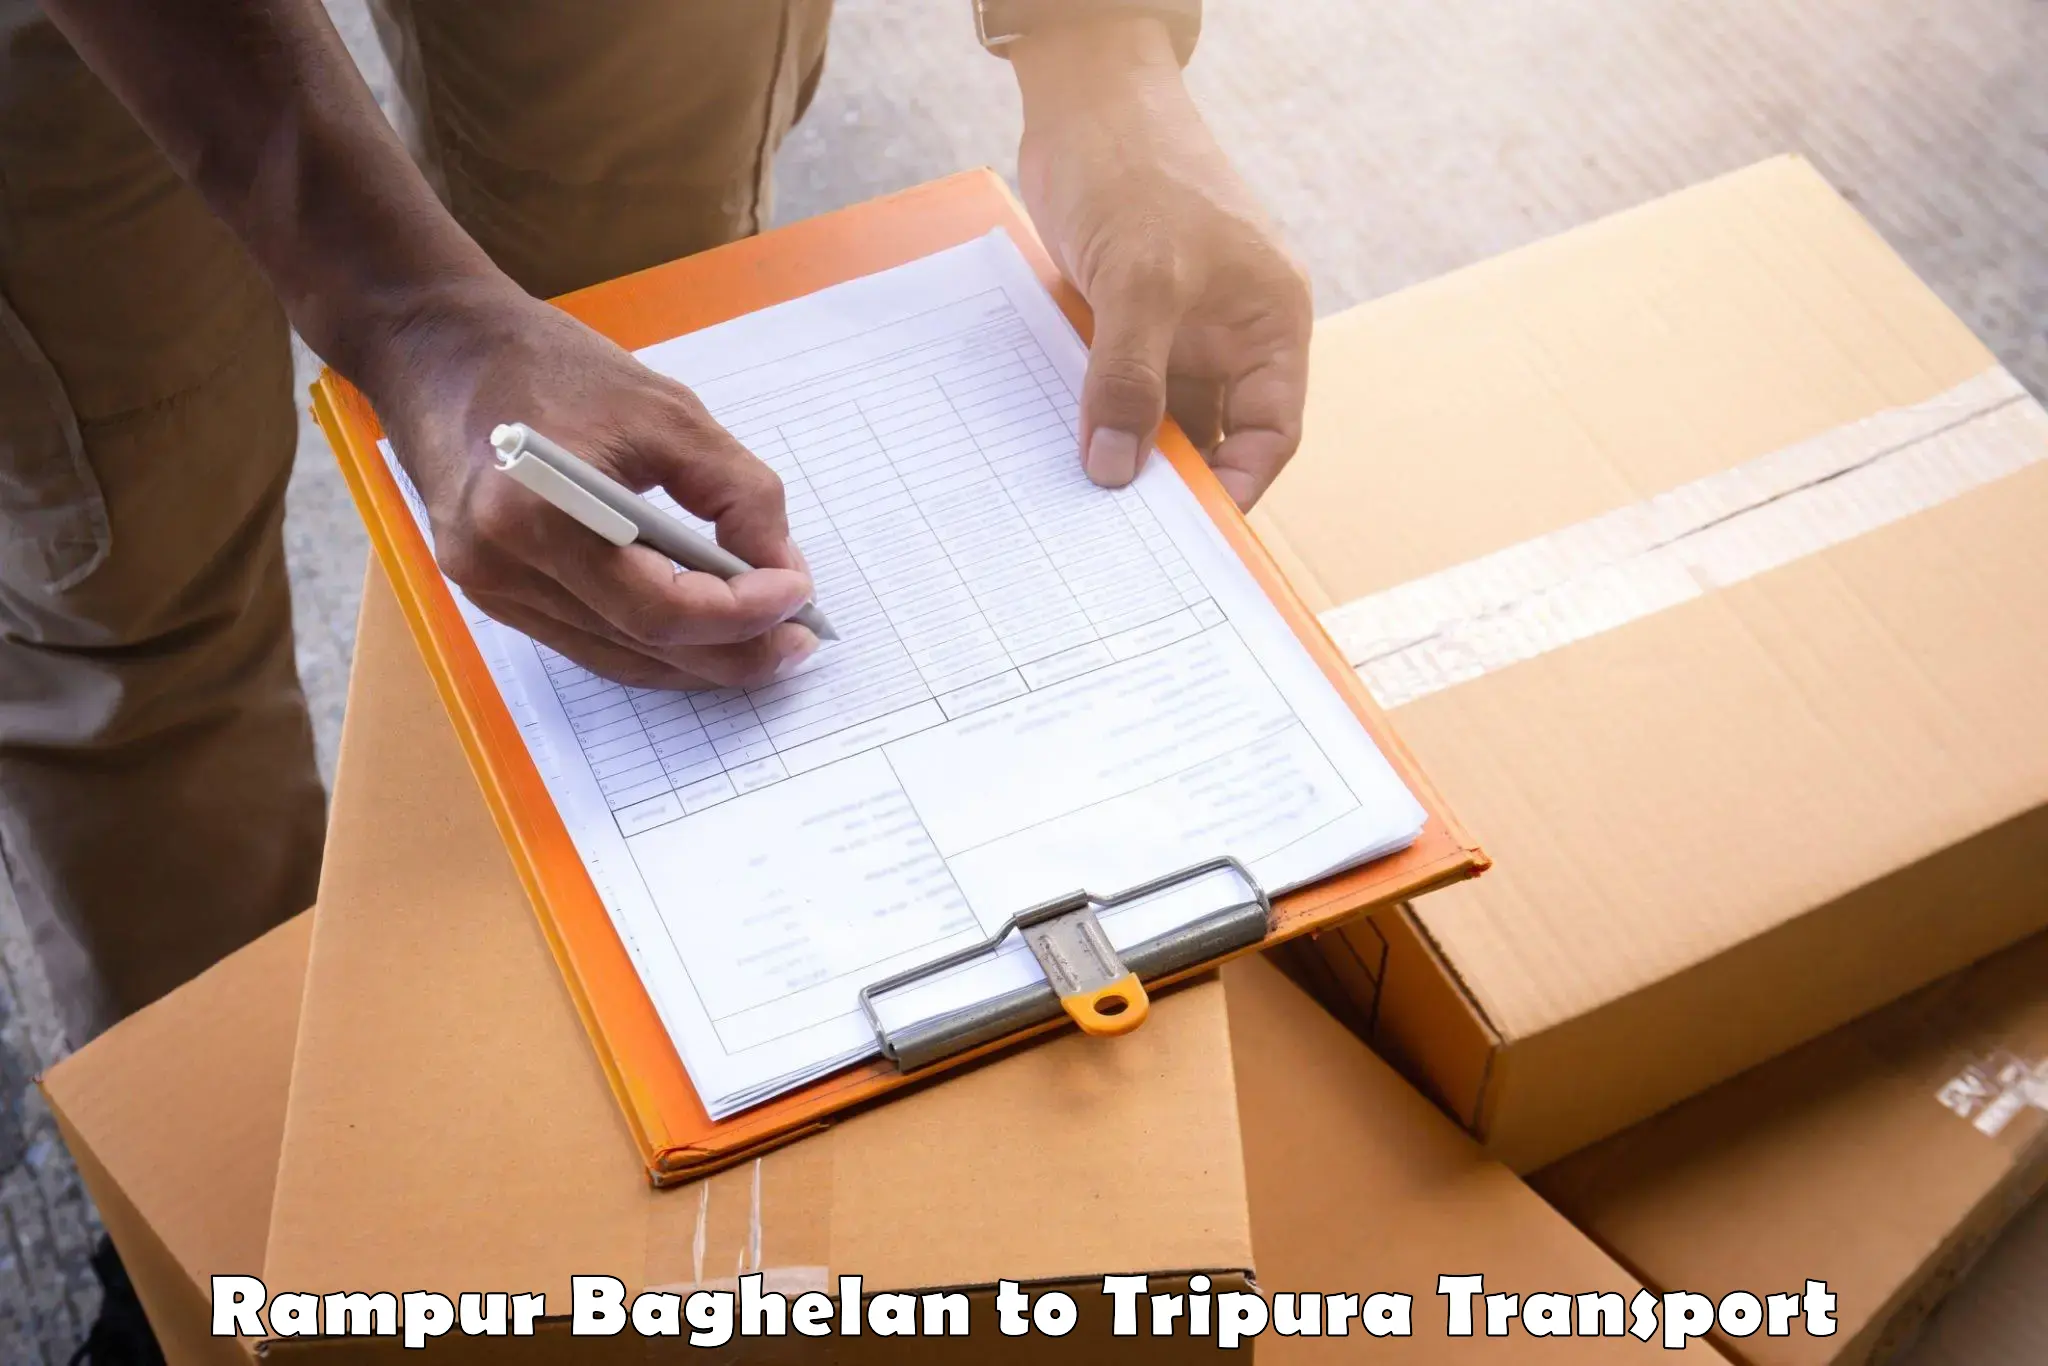 Transport in sharing Rampur Baghelan to Udaipur Tripura